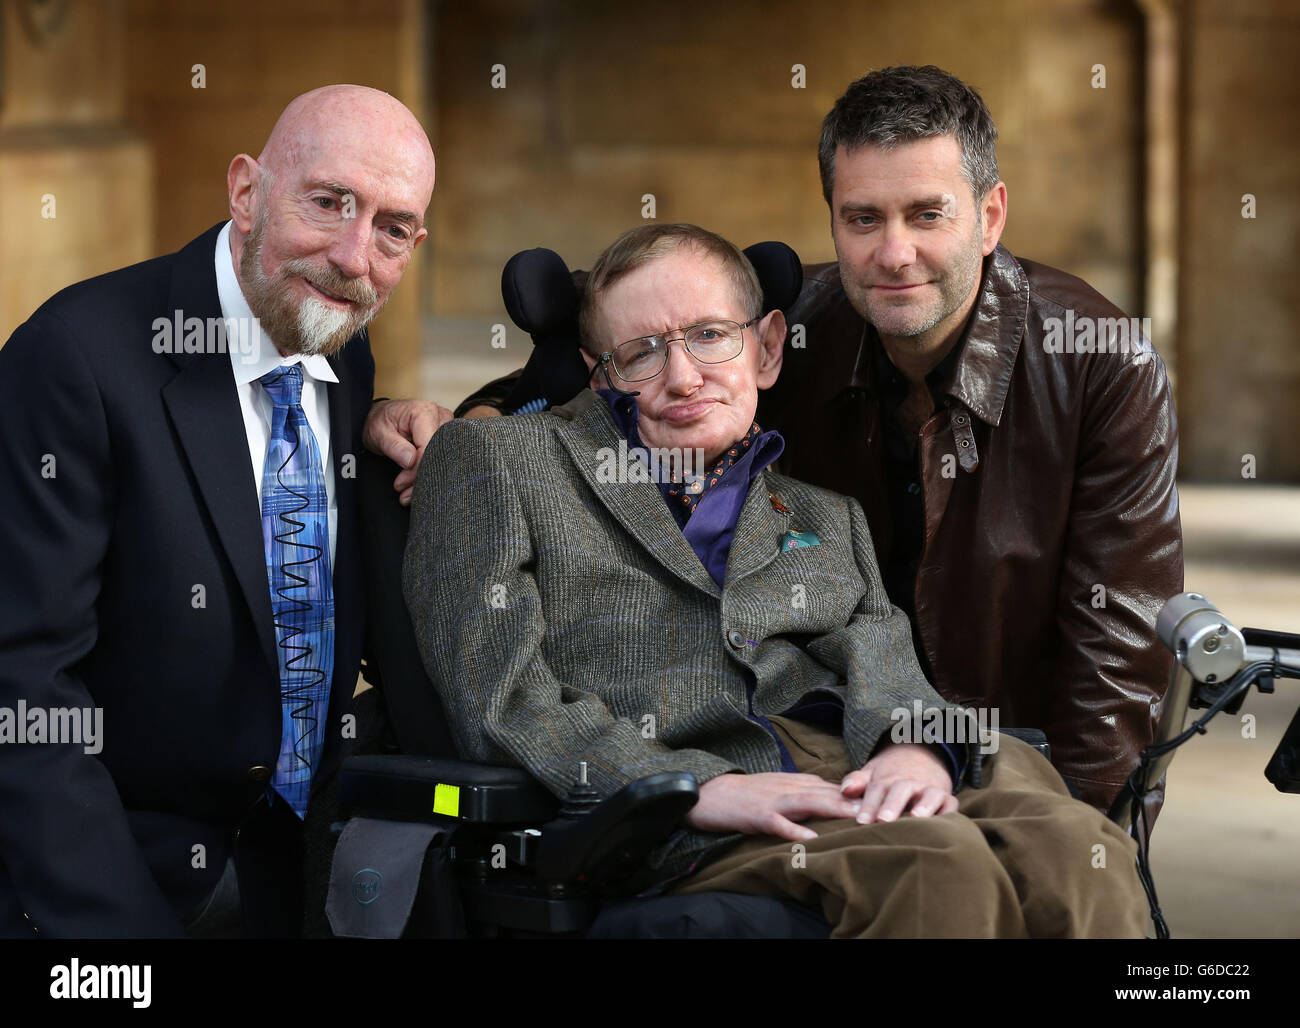 Le professeur Stephen Hawking accompagné du professeur Kip Thorne (à gauche) et du réalisateur Stephen Finnigan (à droite) arrivent pour la projection de gala de Hawking la nuit d'ouverture du 33ème Festival du film de Cambridge à la Cambridge Picture House. Banque D'Images